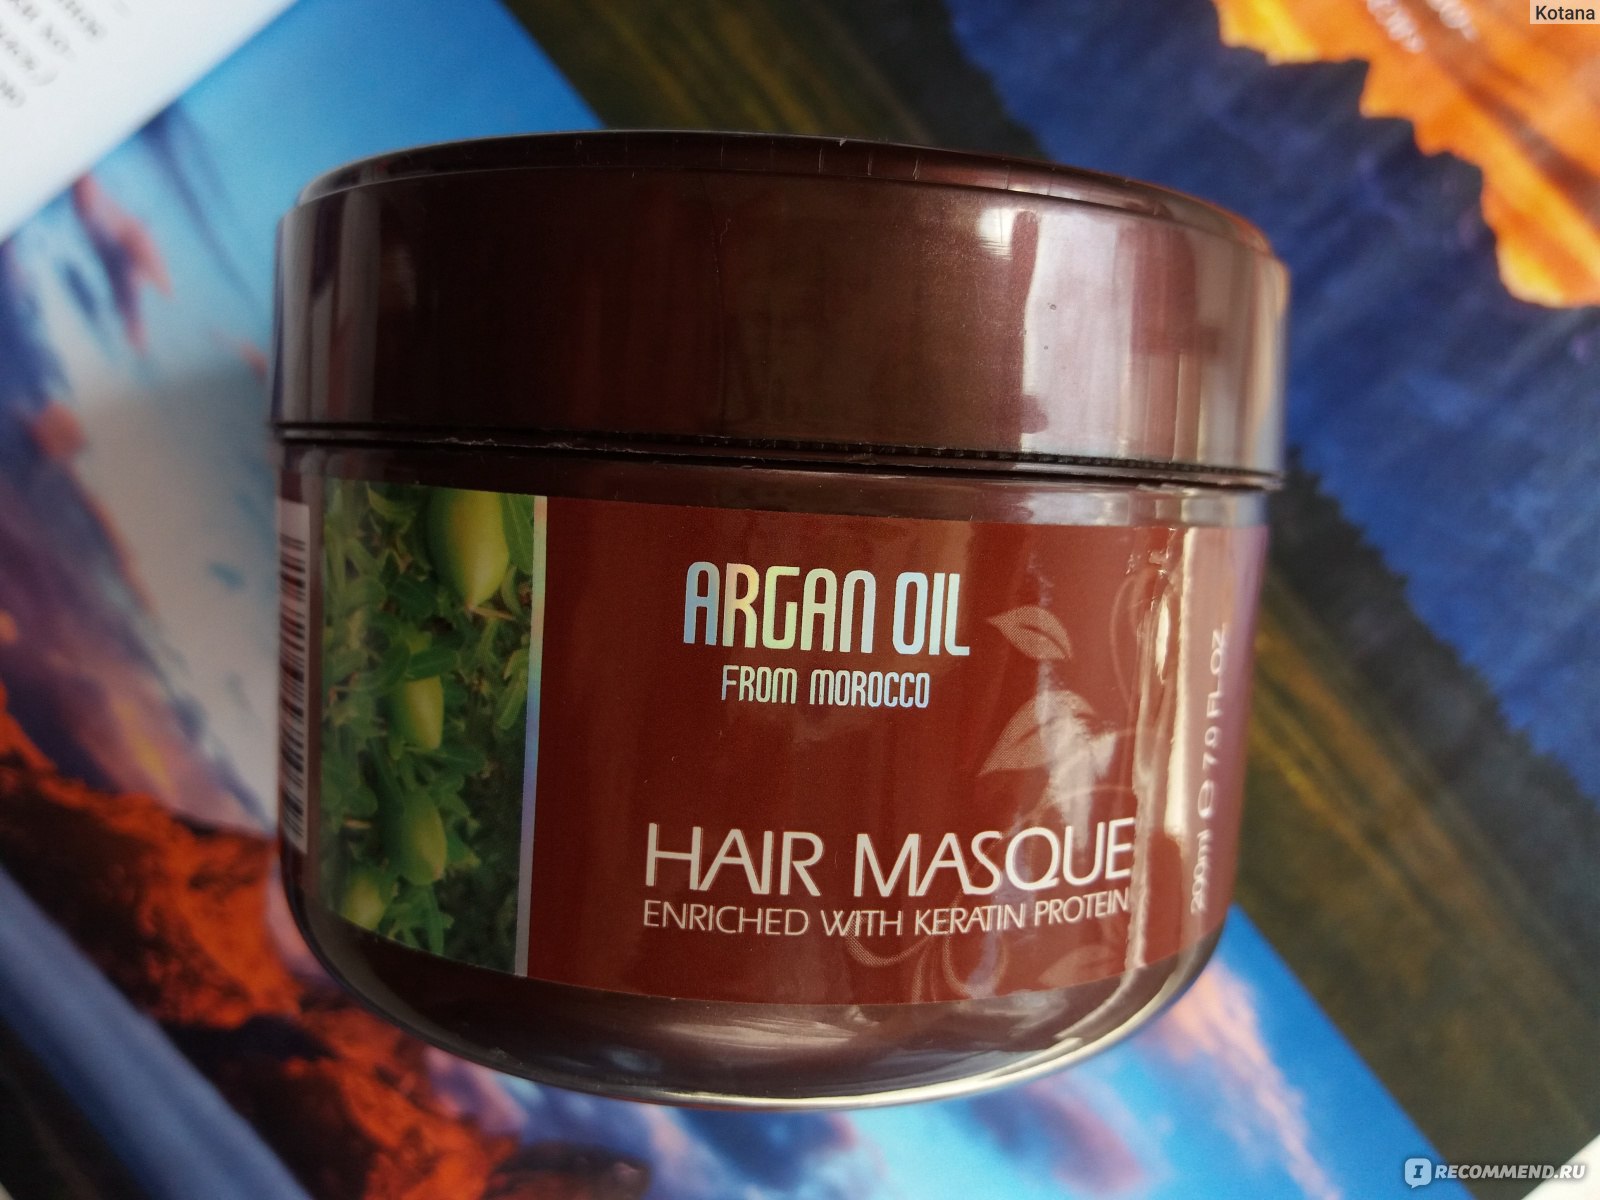 Маска для волос ollin с аргановым маслом